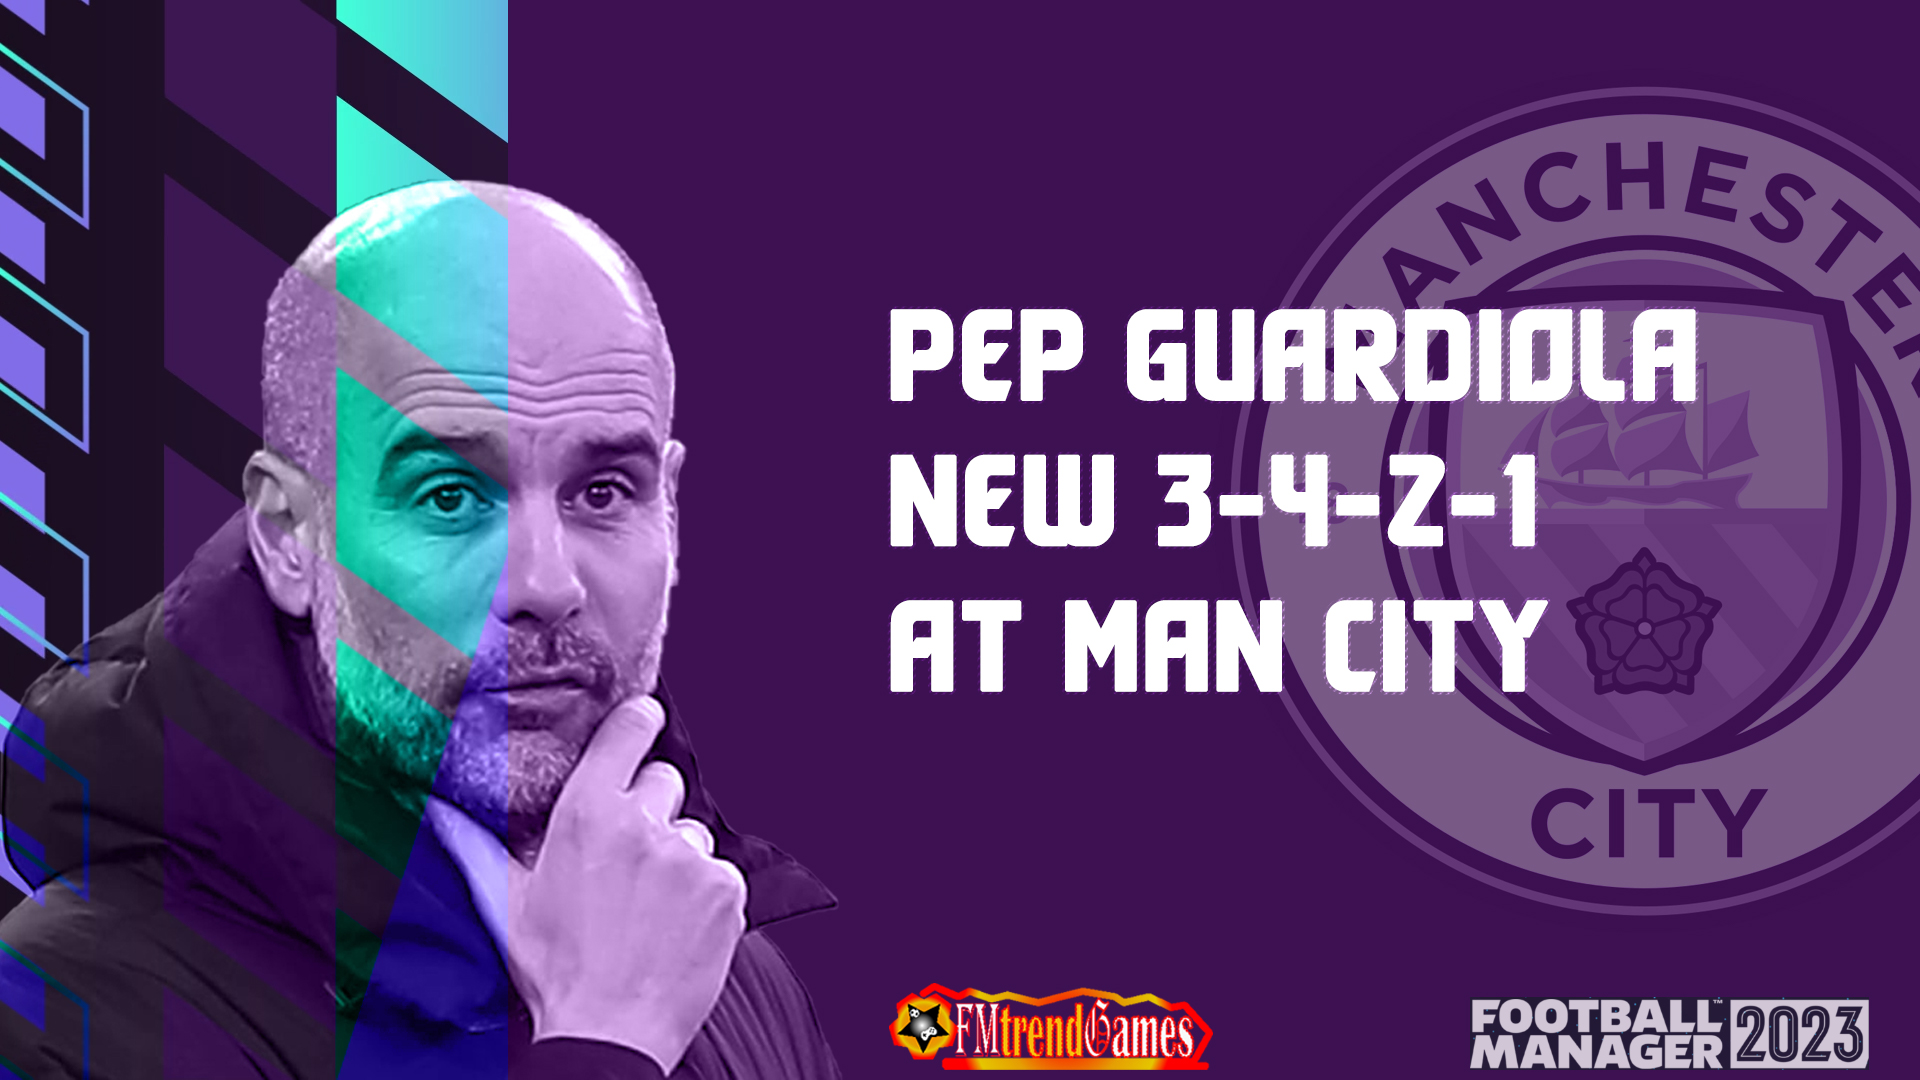 Pep Guardiola Man City 4-3-3 Tactic for FM21